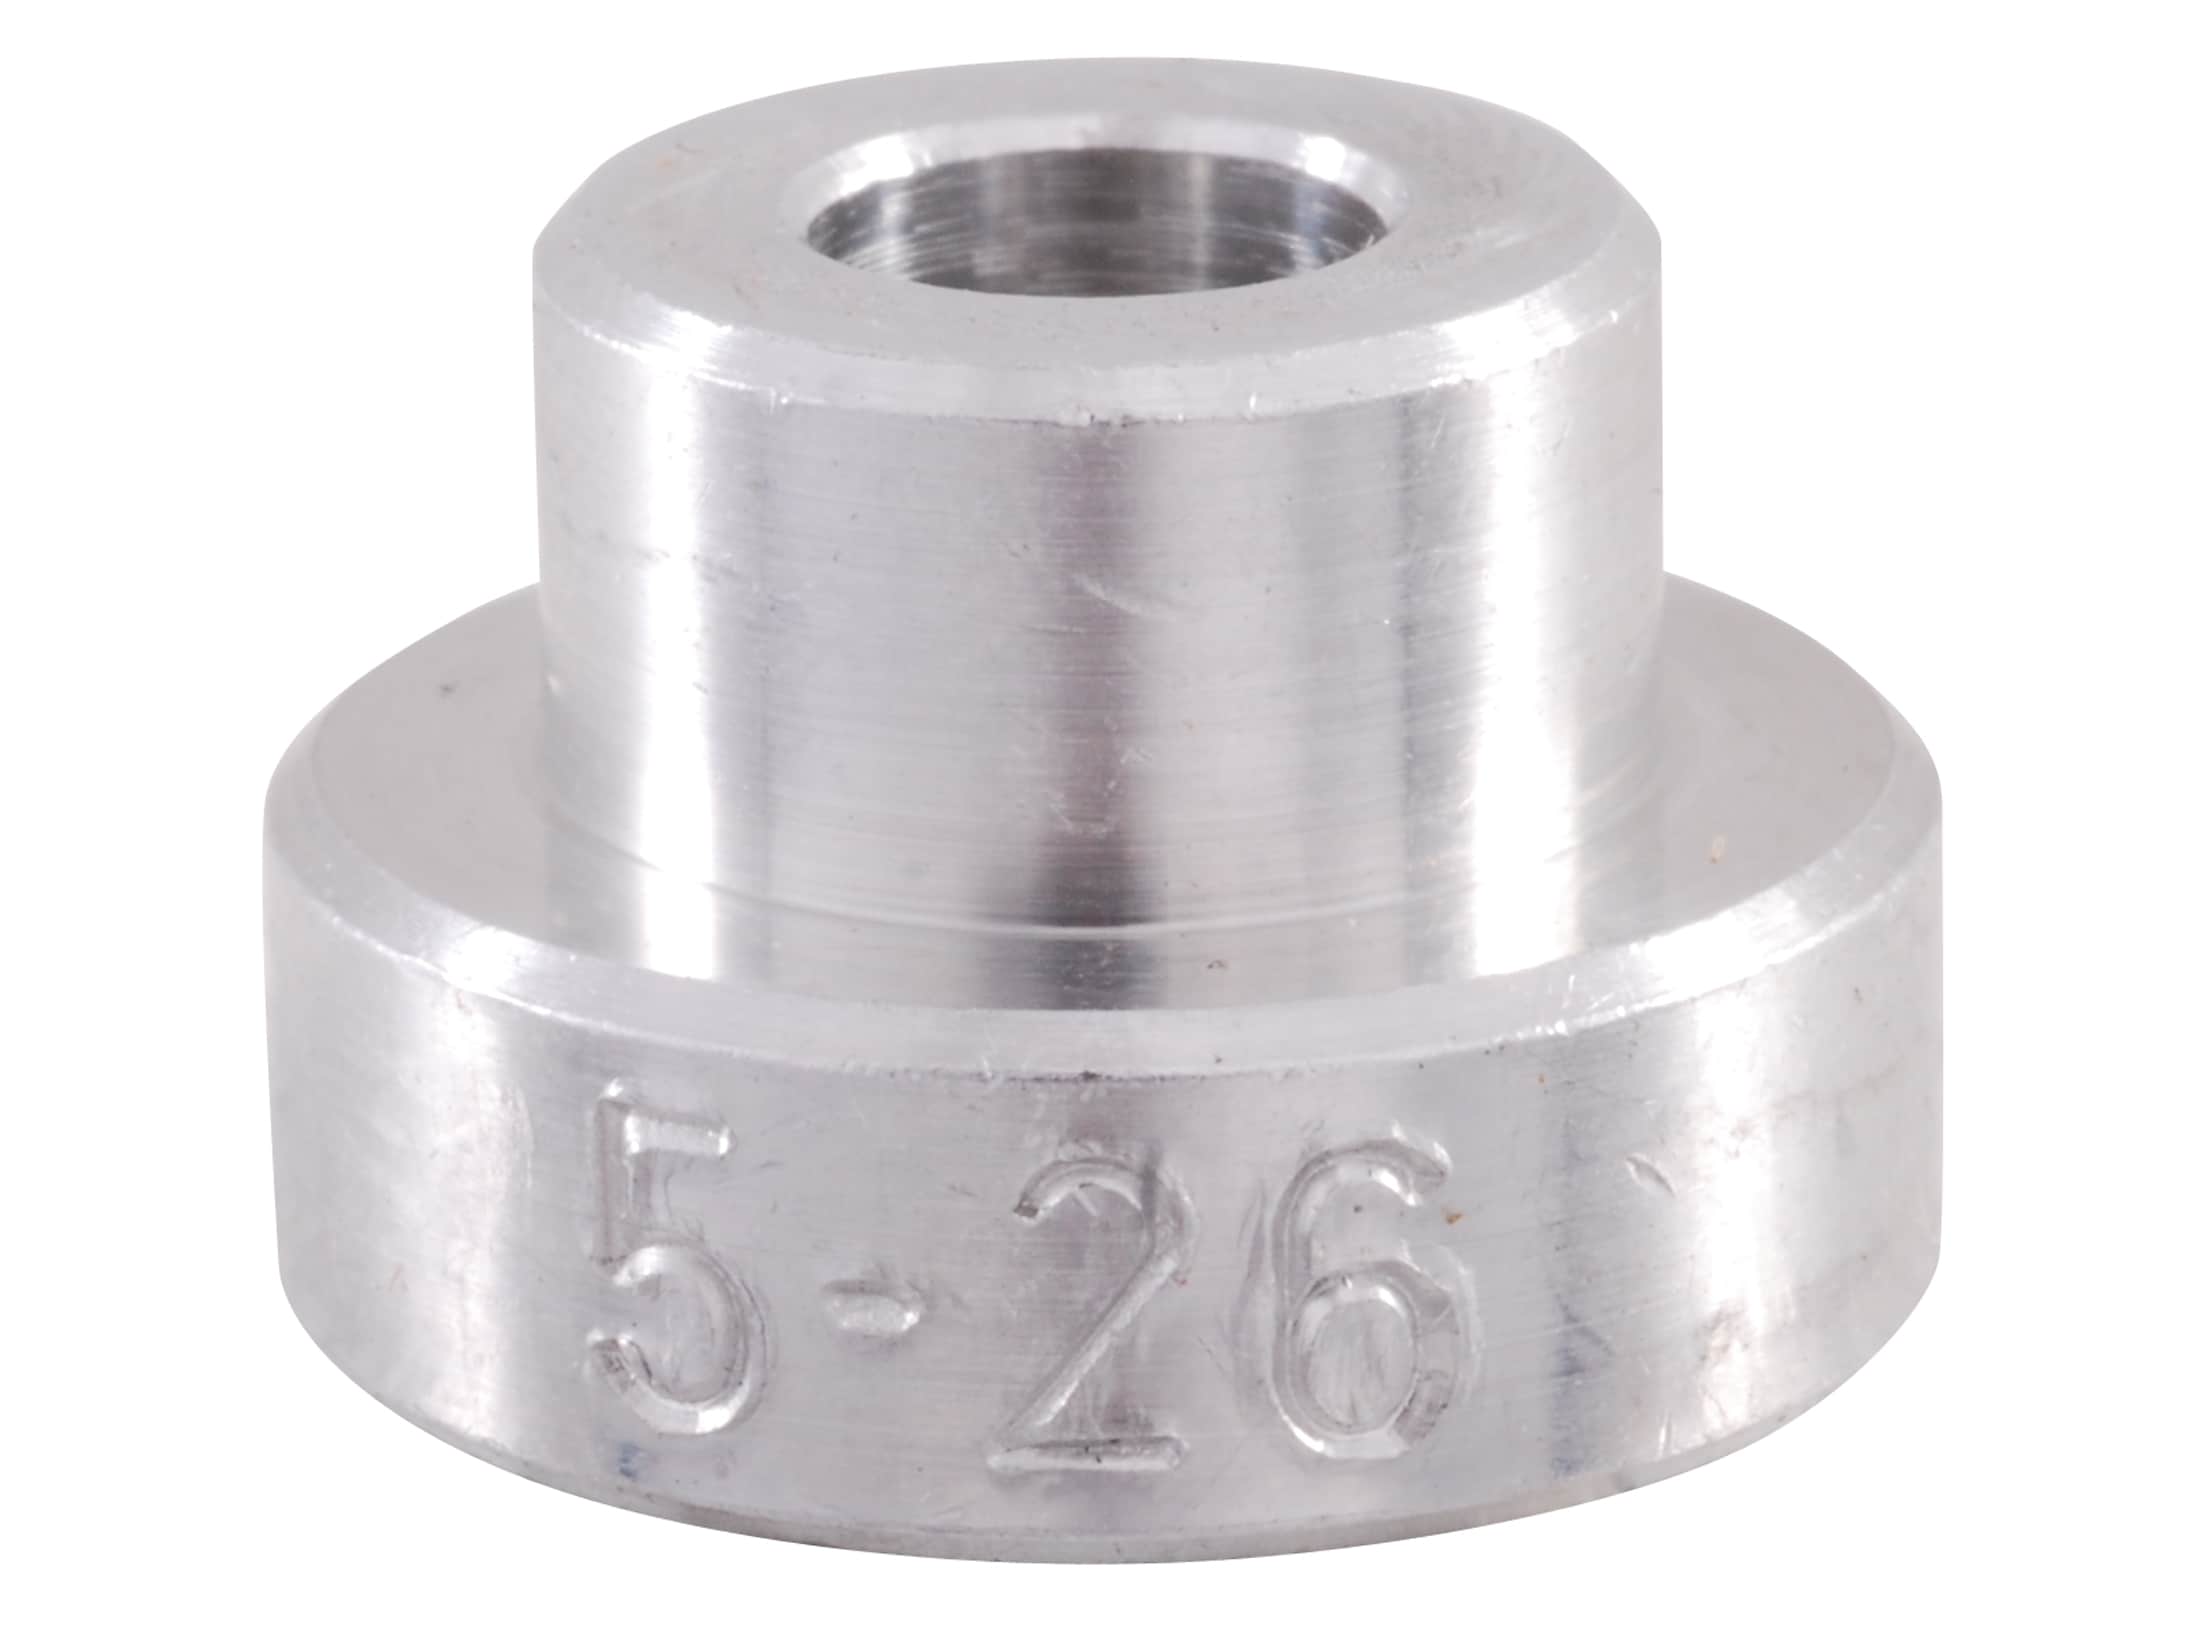 Details about   Hornady 7 Gauge Bullet/OGive Gauge Comparator Kit Organizer/Holder *Magnetic* 